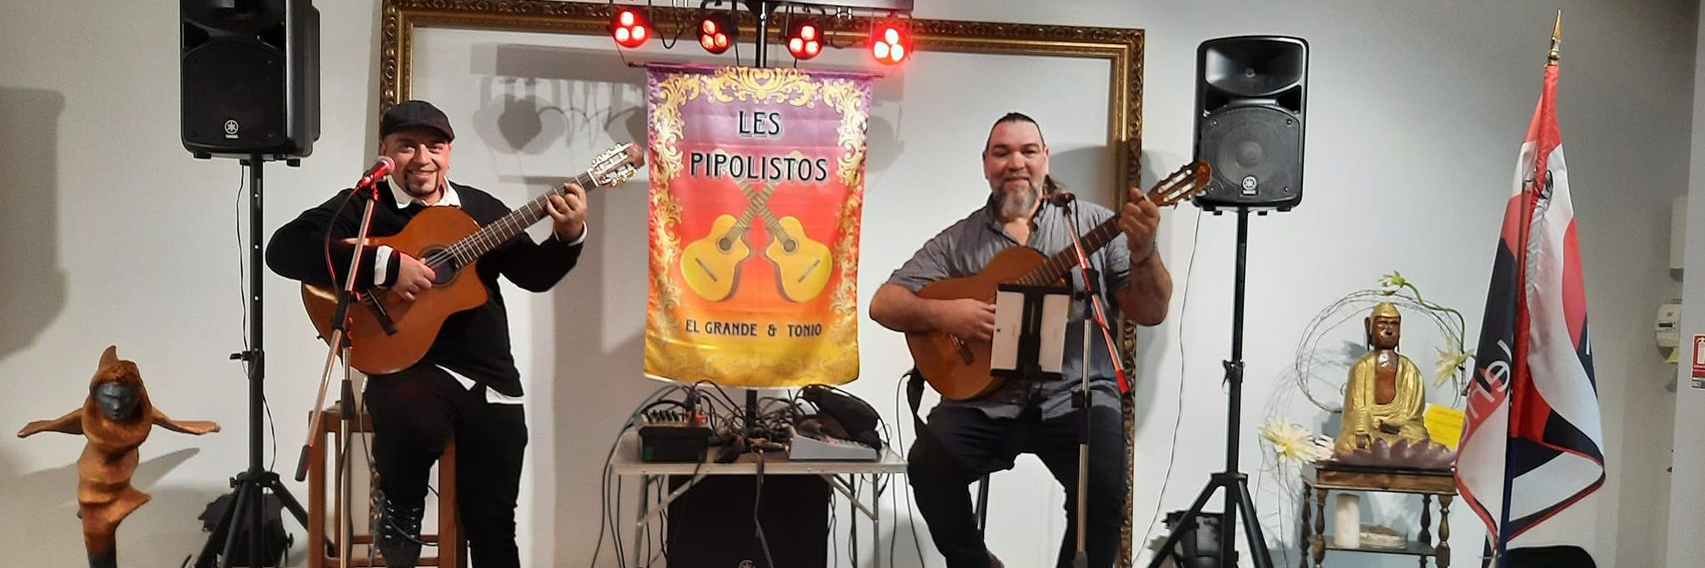 Pipolistos, musicien Gypsy en représentation à Vaucluse - photo de couverture n° 2